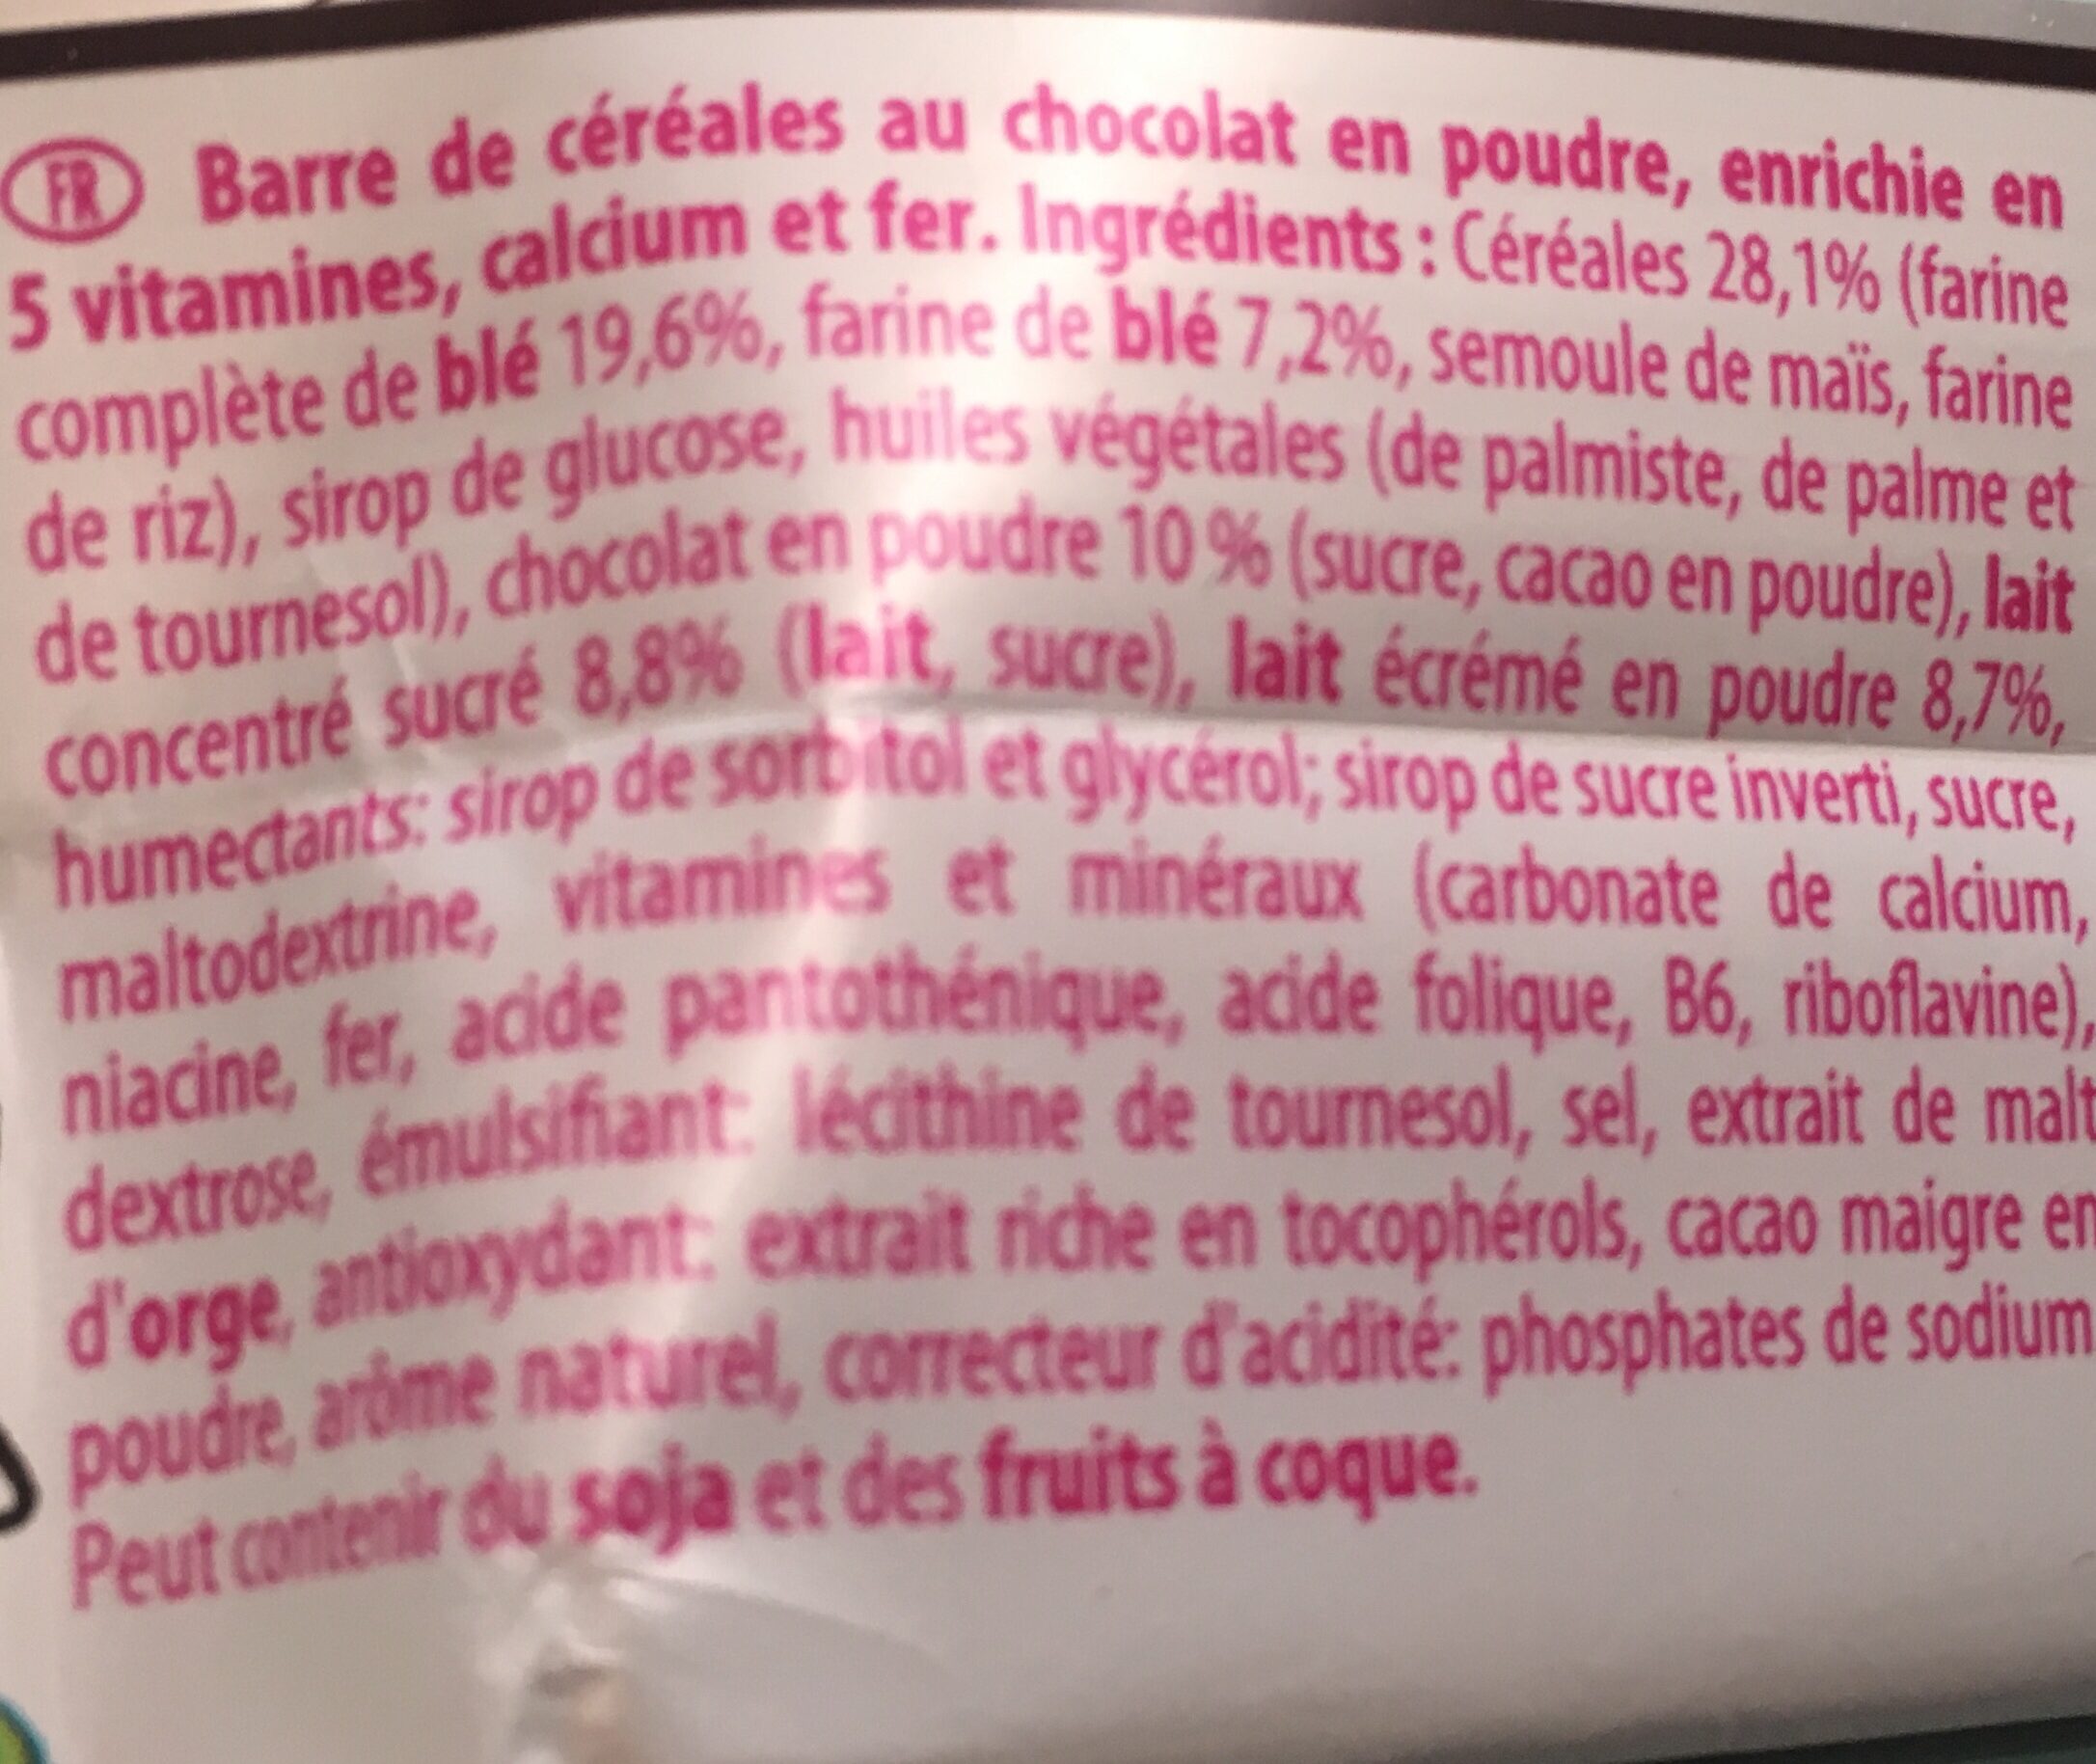 CHOCAPIC barres de céréales - Ingredients - fr